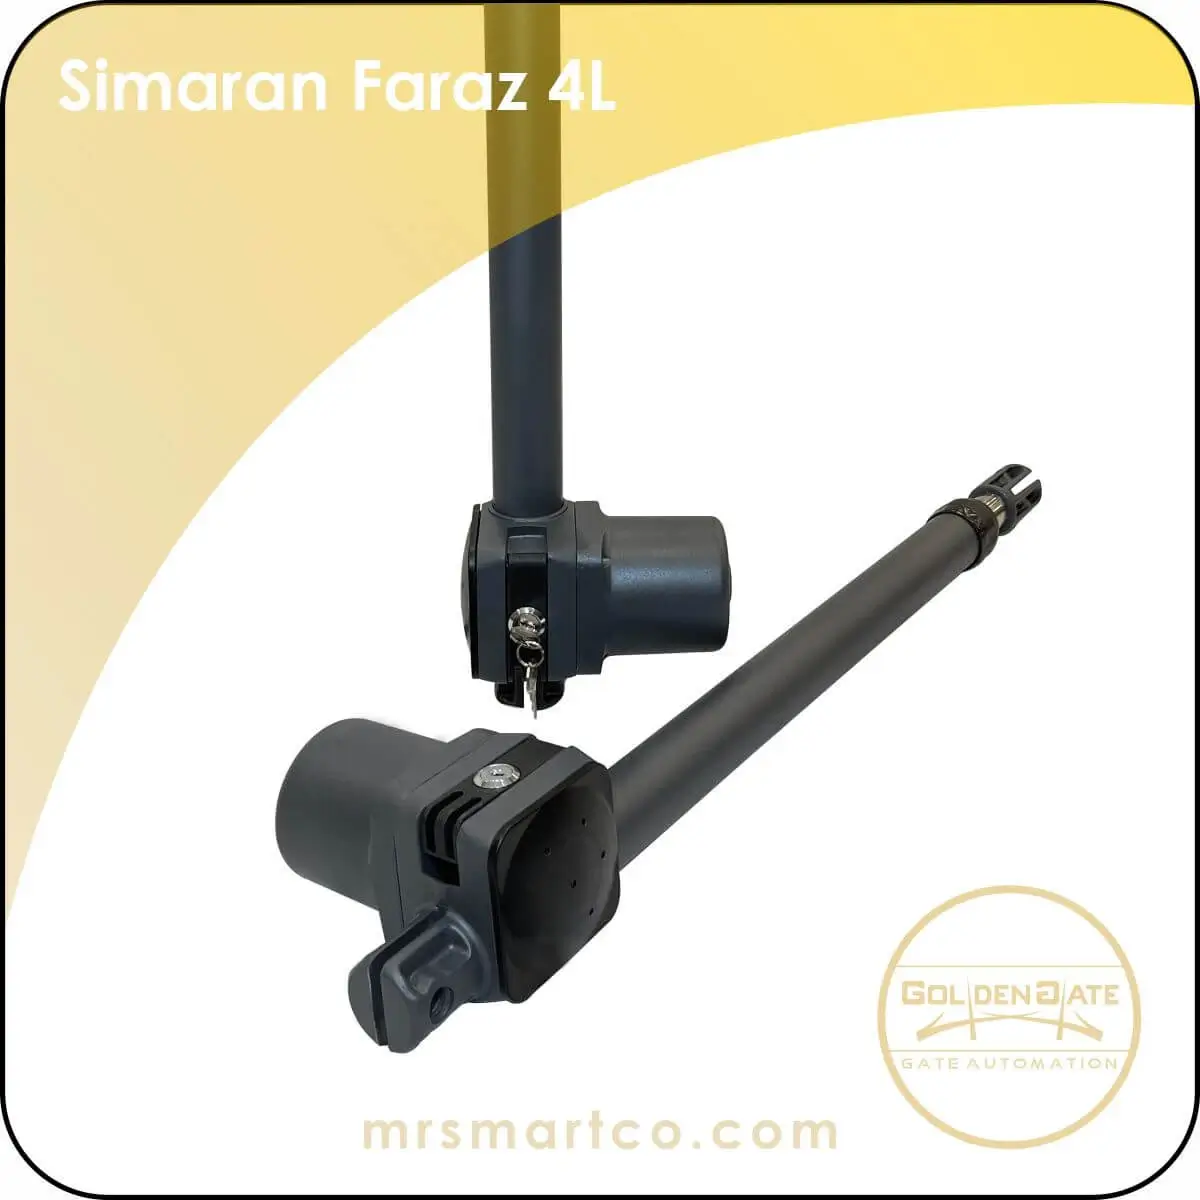 0013760_simaran-faraz-4l